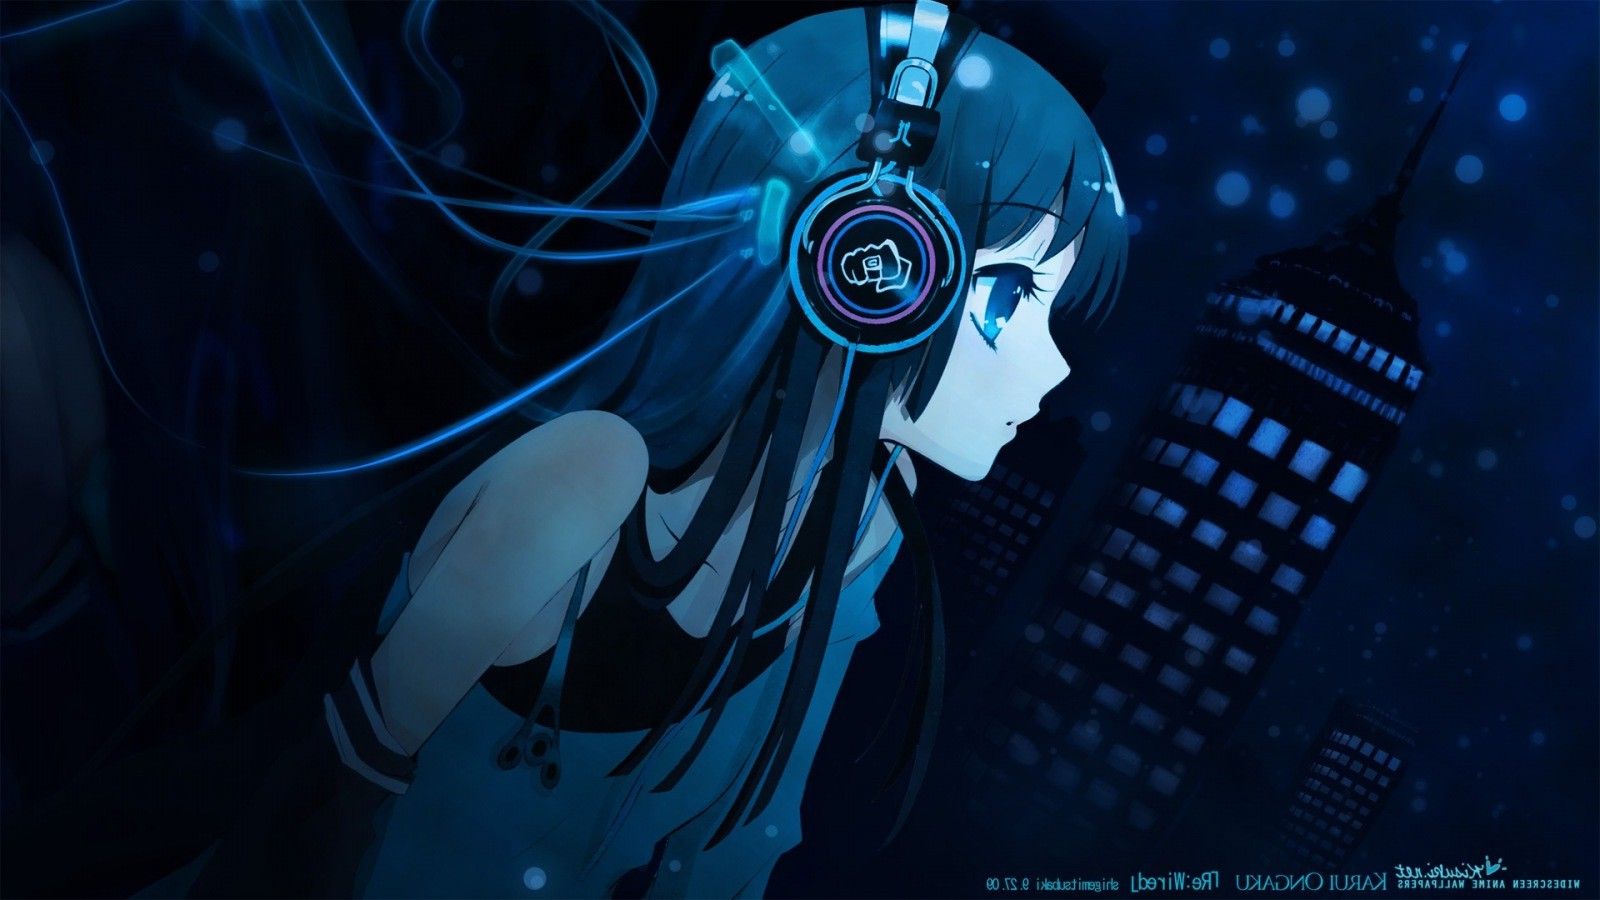 Wallpaper, illustration, anime girls, blue, headphones, darkness, screenshot, 1600x900 px, computer wallpaper 1600x900